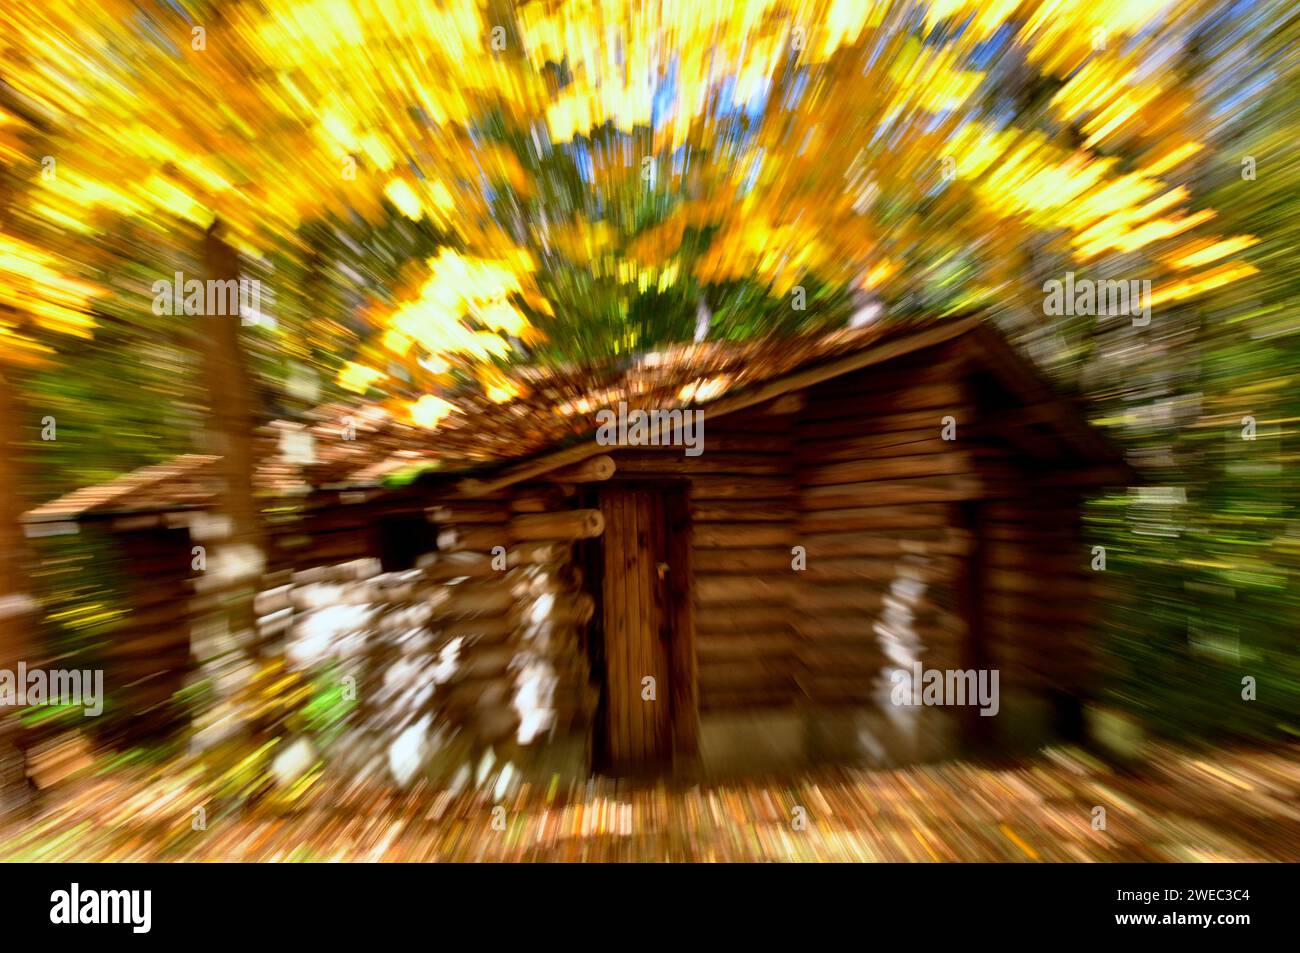 Image conceptuelle d'un arrière-plan de maison en rondins avec un effet de mouvement de zoom. Banque D'Images